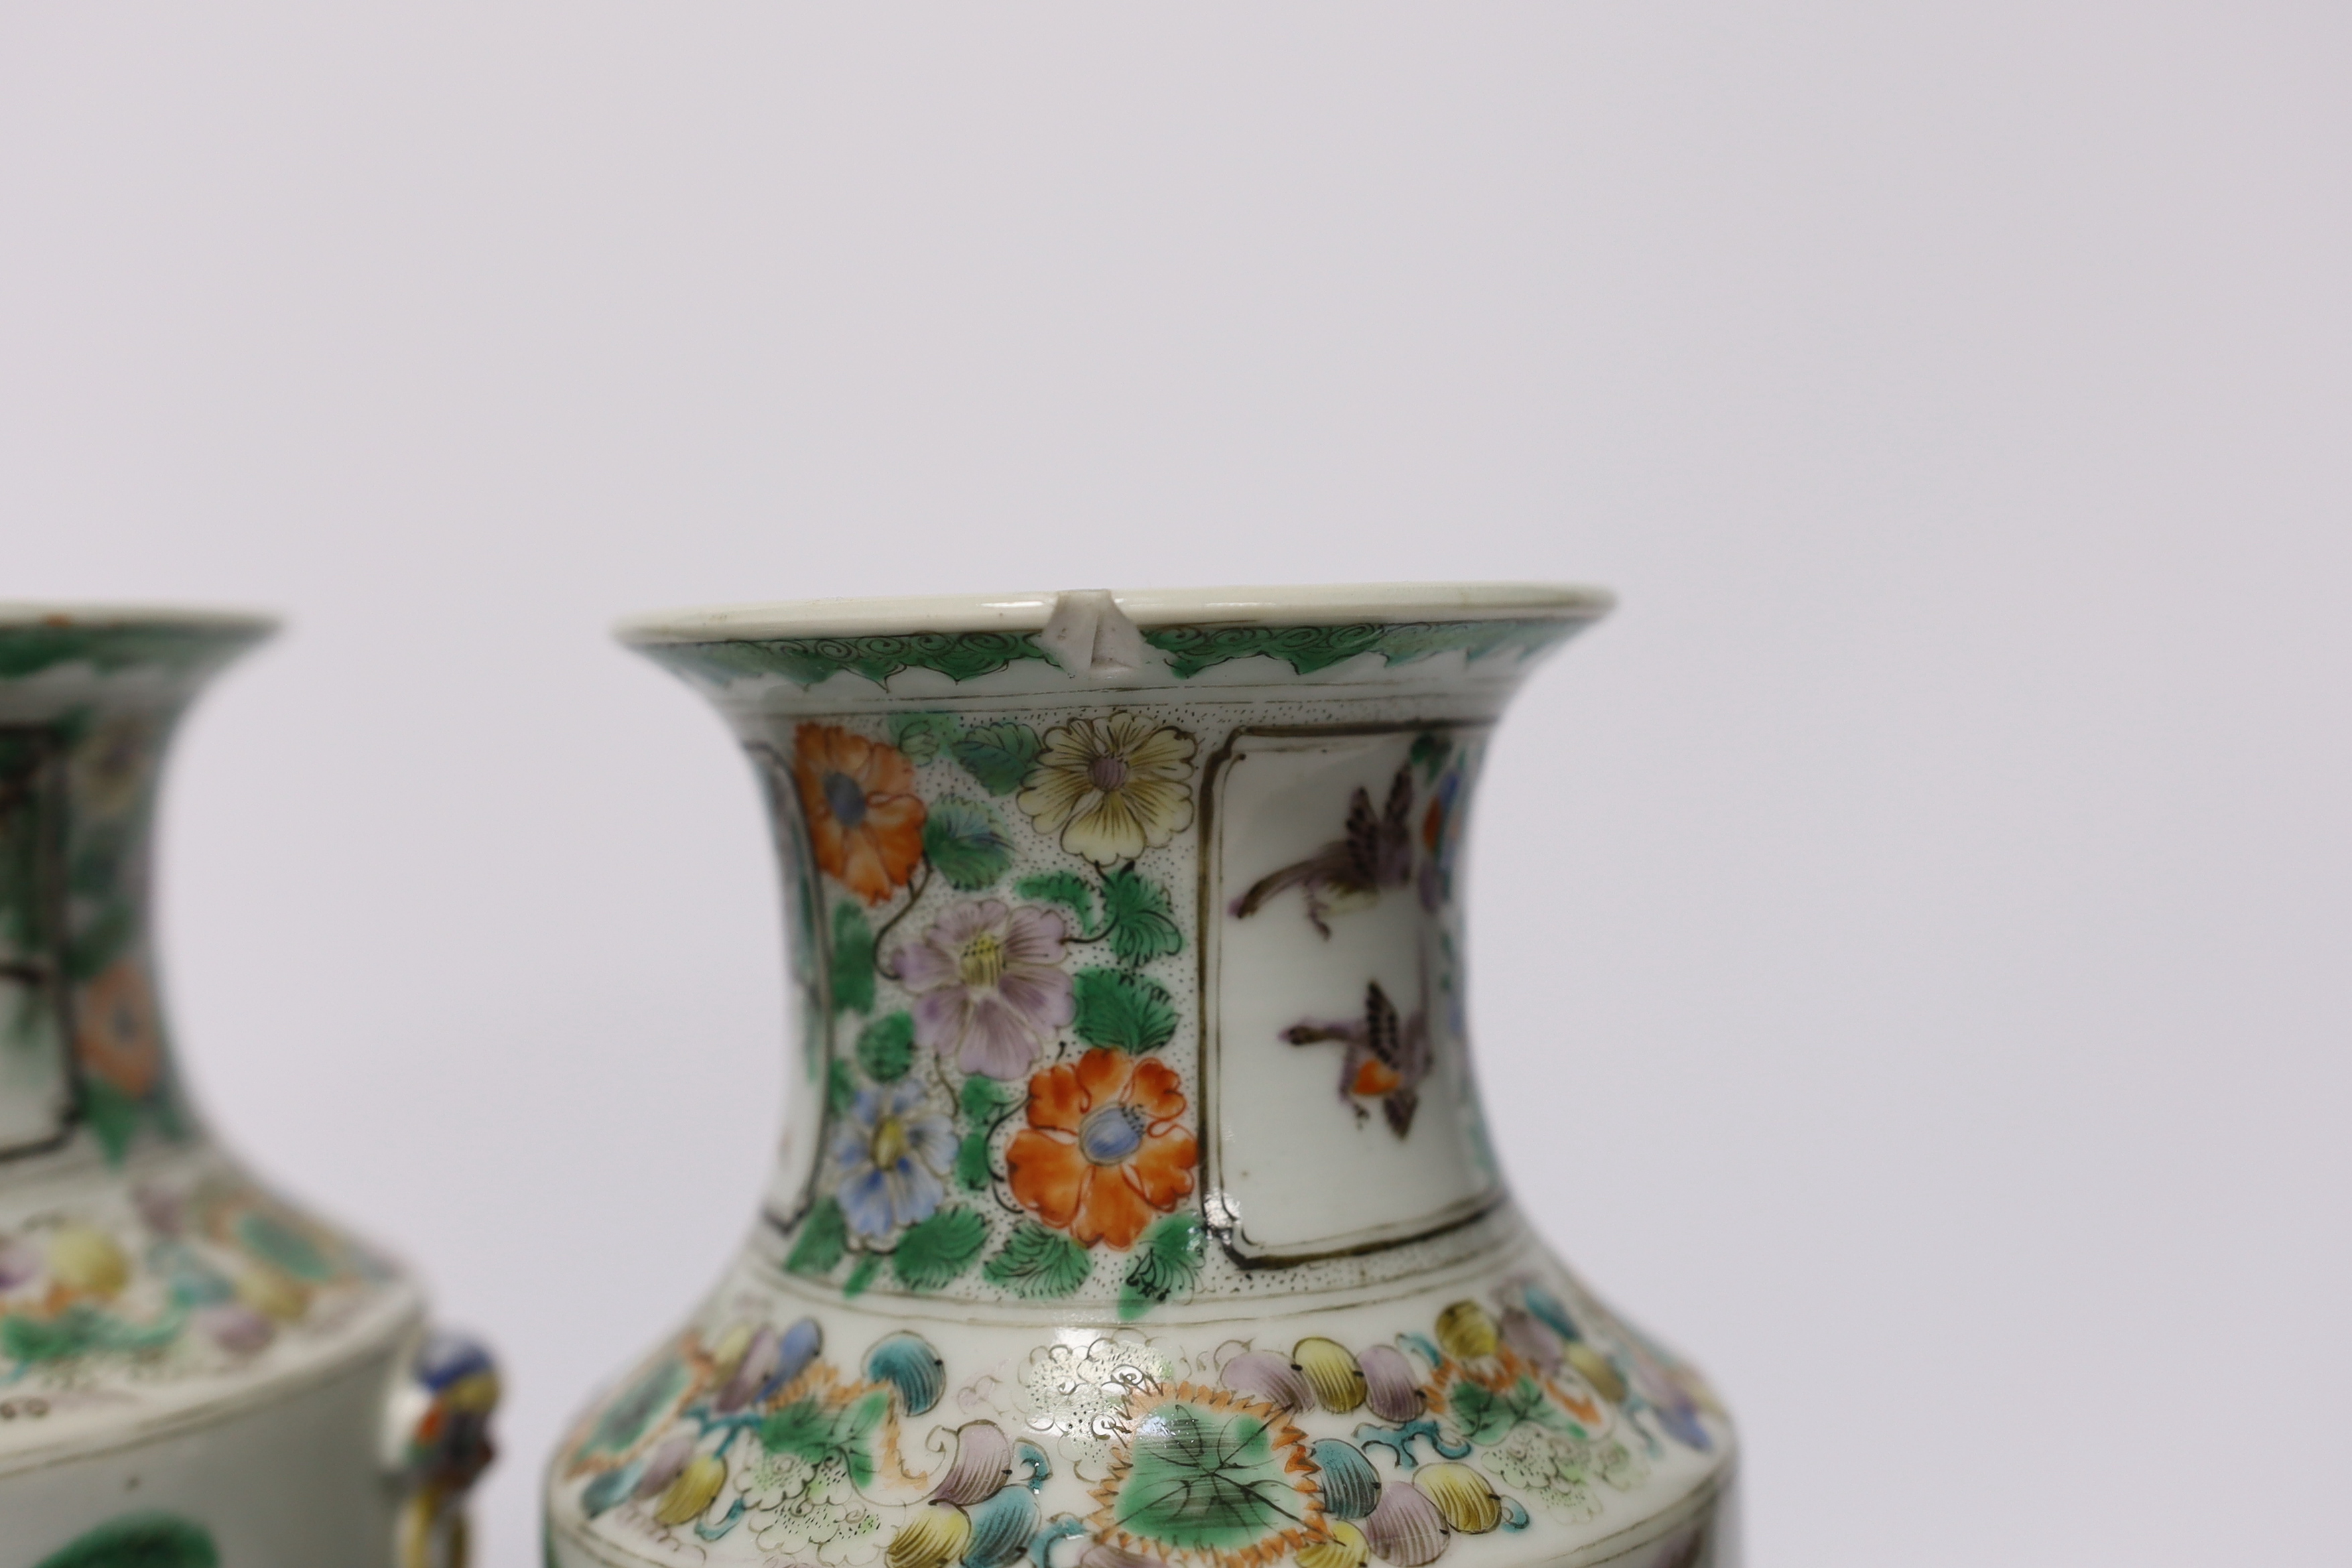 A pair of 19th century Chinese famille verte ‘ladies’ vases, 23cm